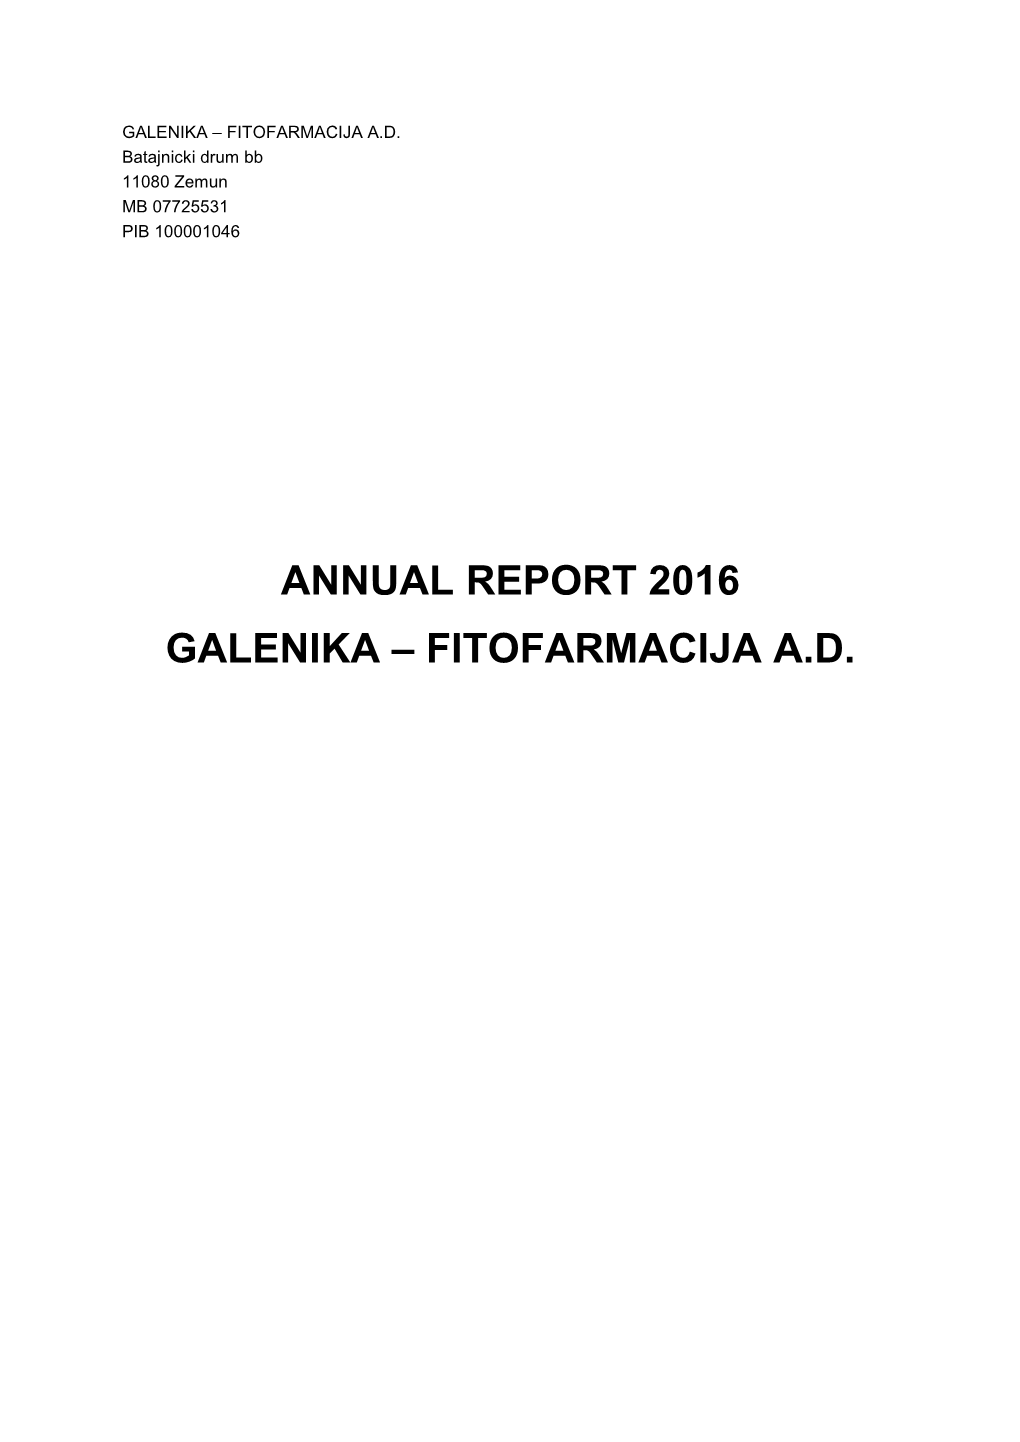 Annual Report 2016 Galenika – Fitofarmacija A.D